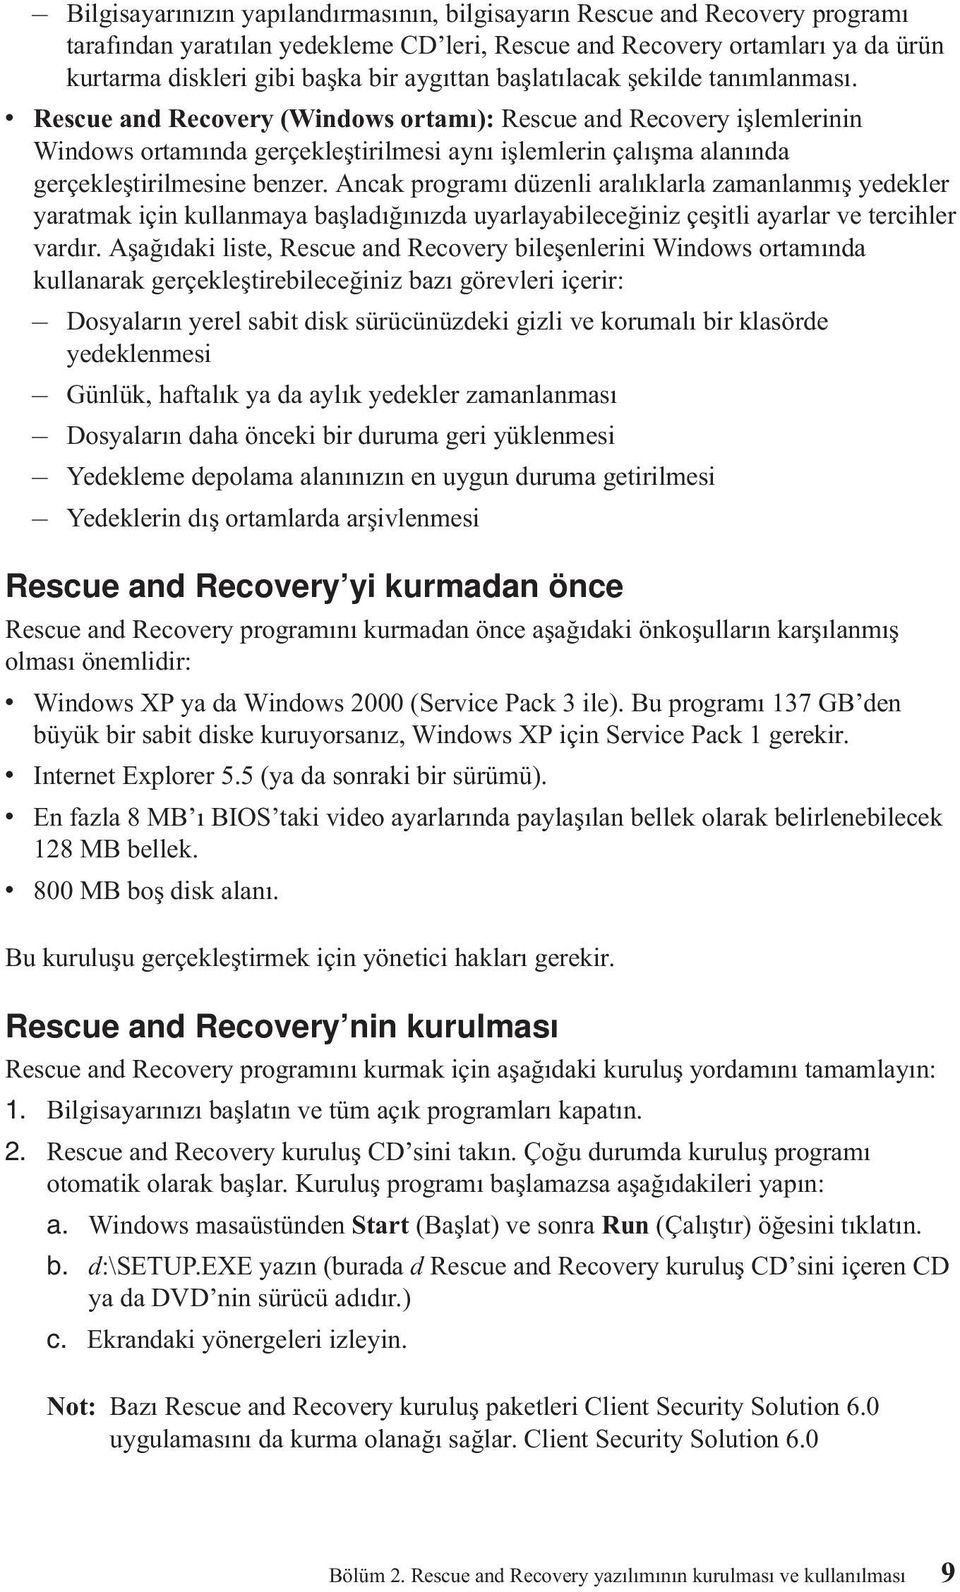 v Rescue and Recovery (Windows ortamı): Rescue and Recovery işlemlerinin Windows ortamında gerçekleştirilmesi aynı işlemlerin çalışma alanında gerçekleştirilmesine benzer.